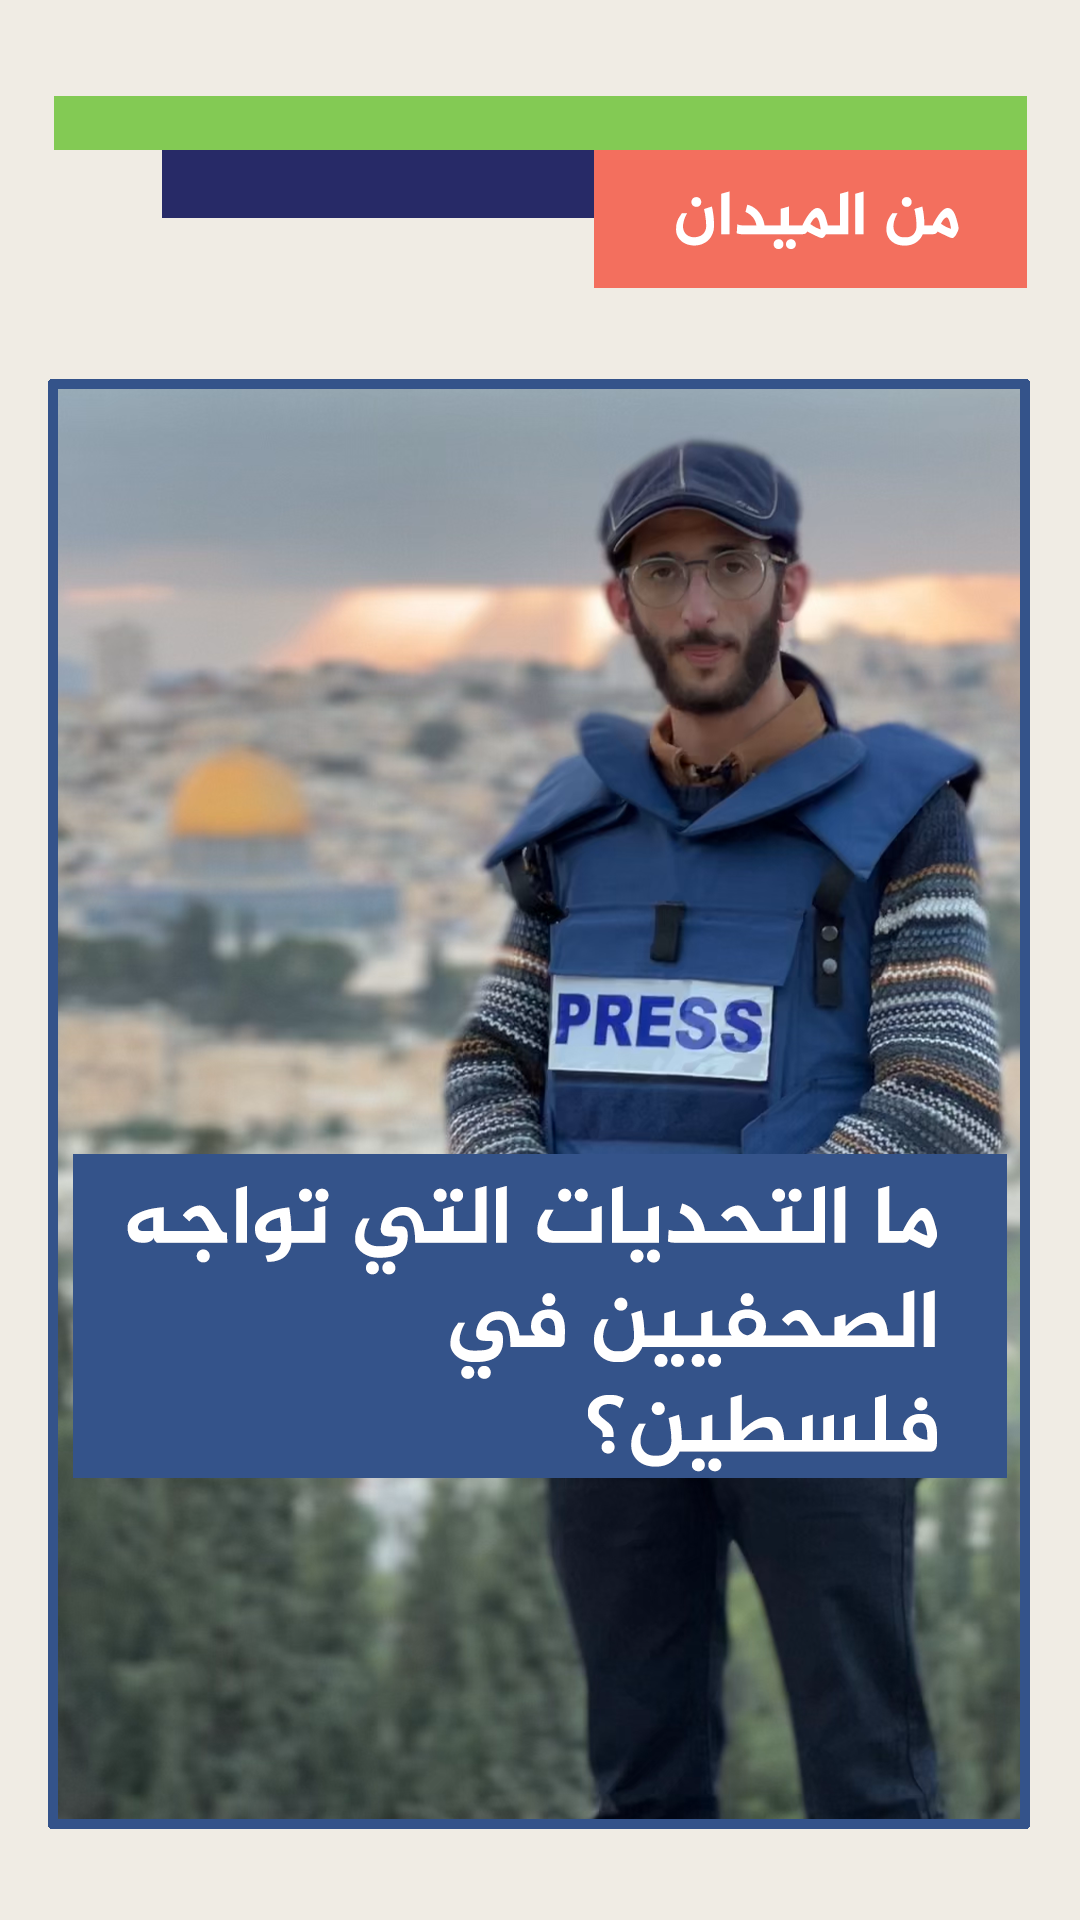 ما التحديات التي تواجه الصحفيين في فلسطين؟